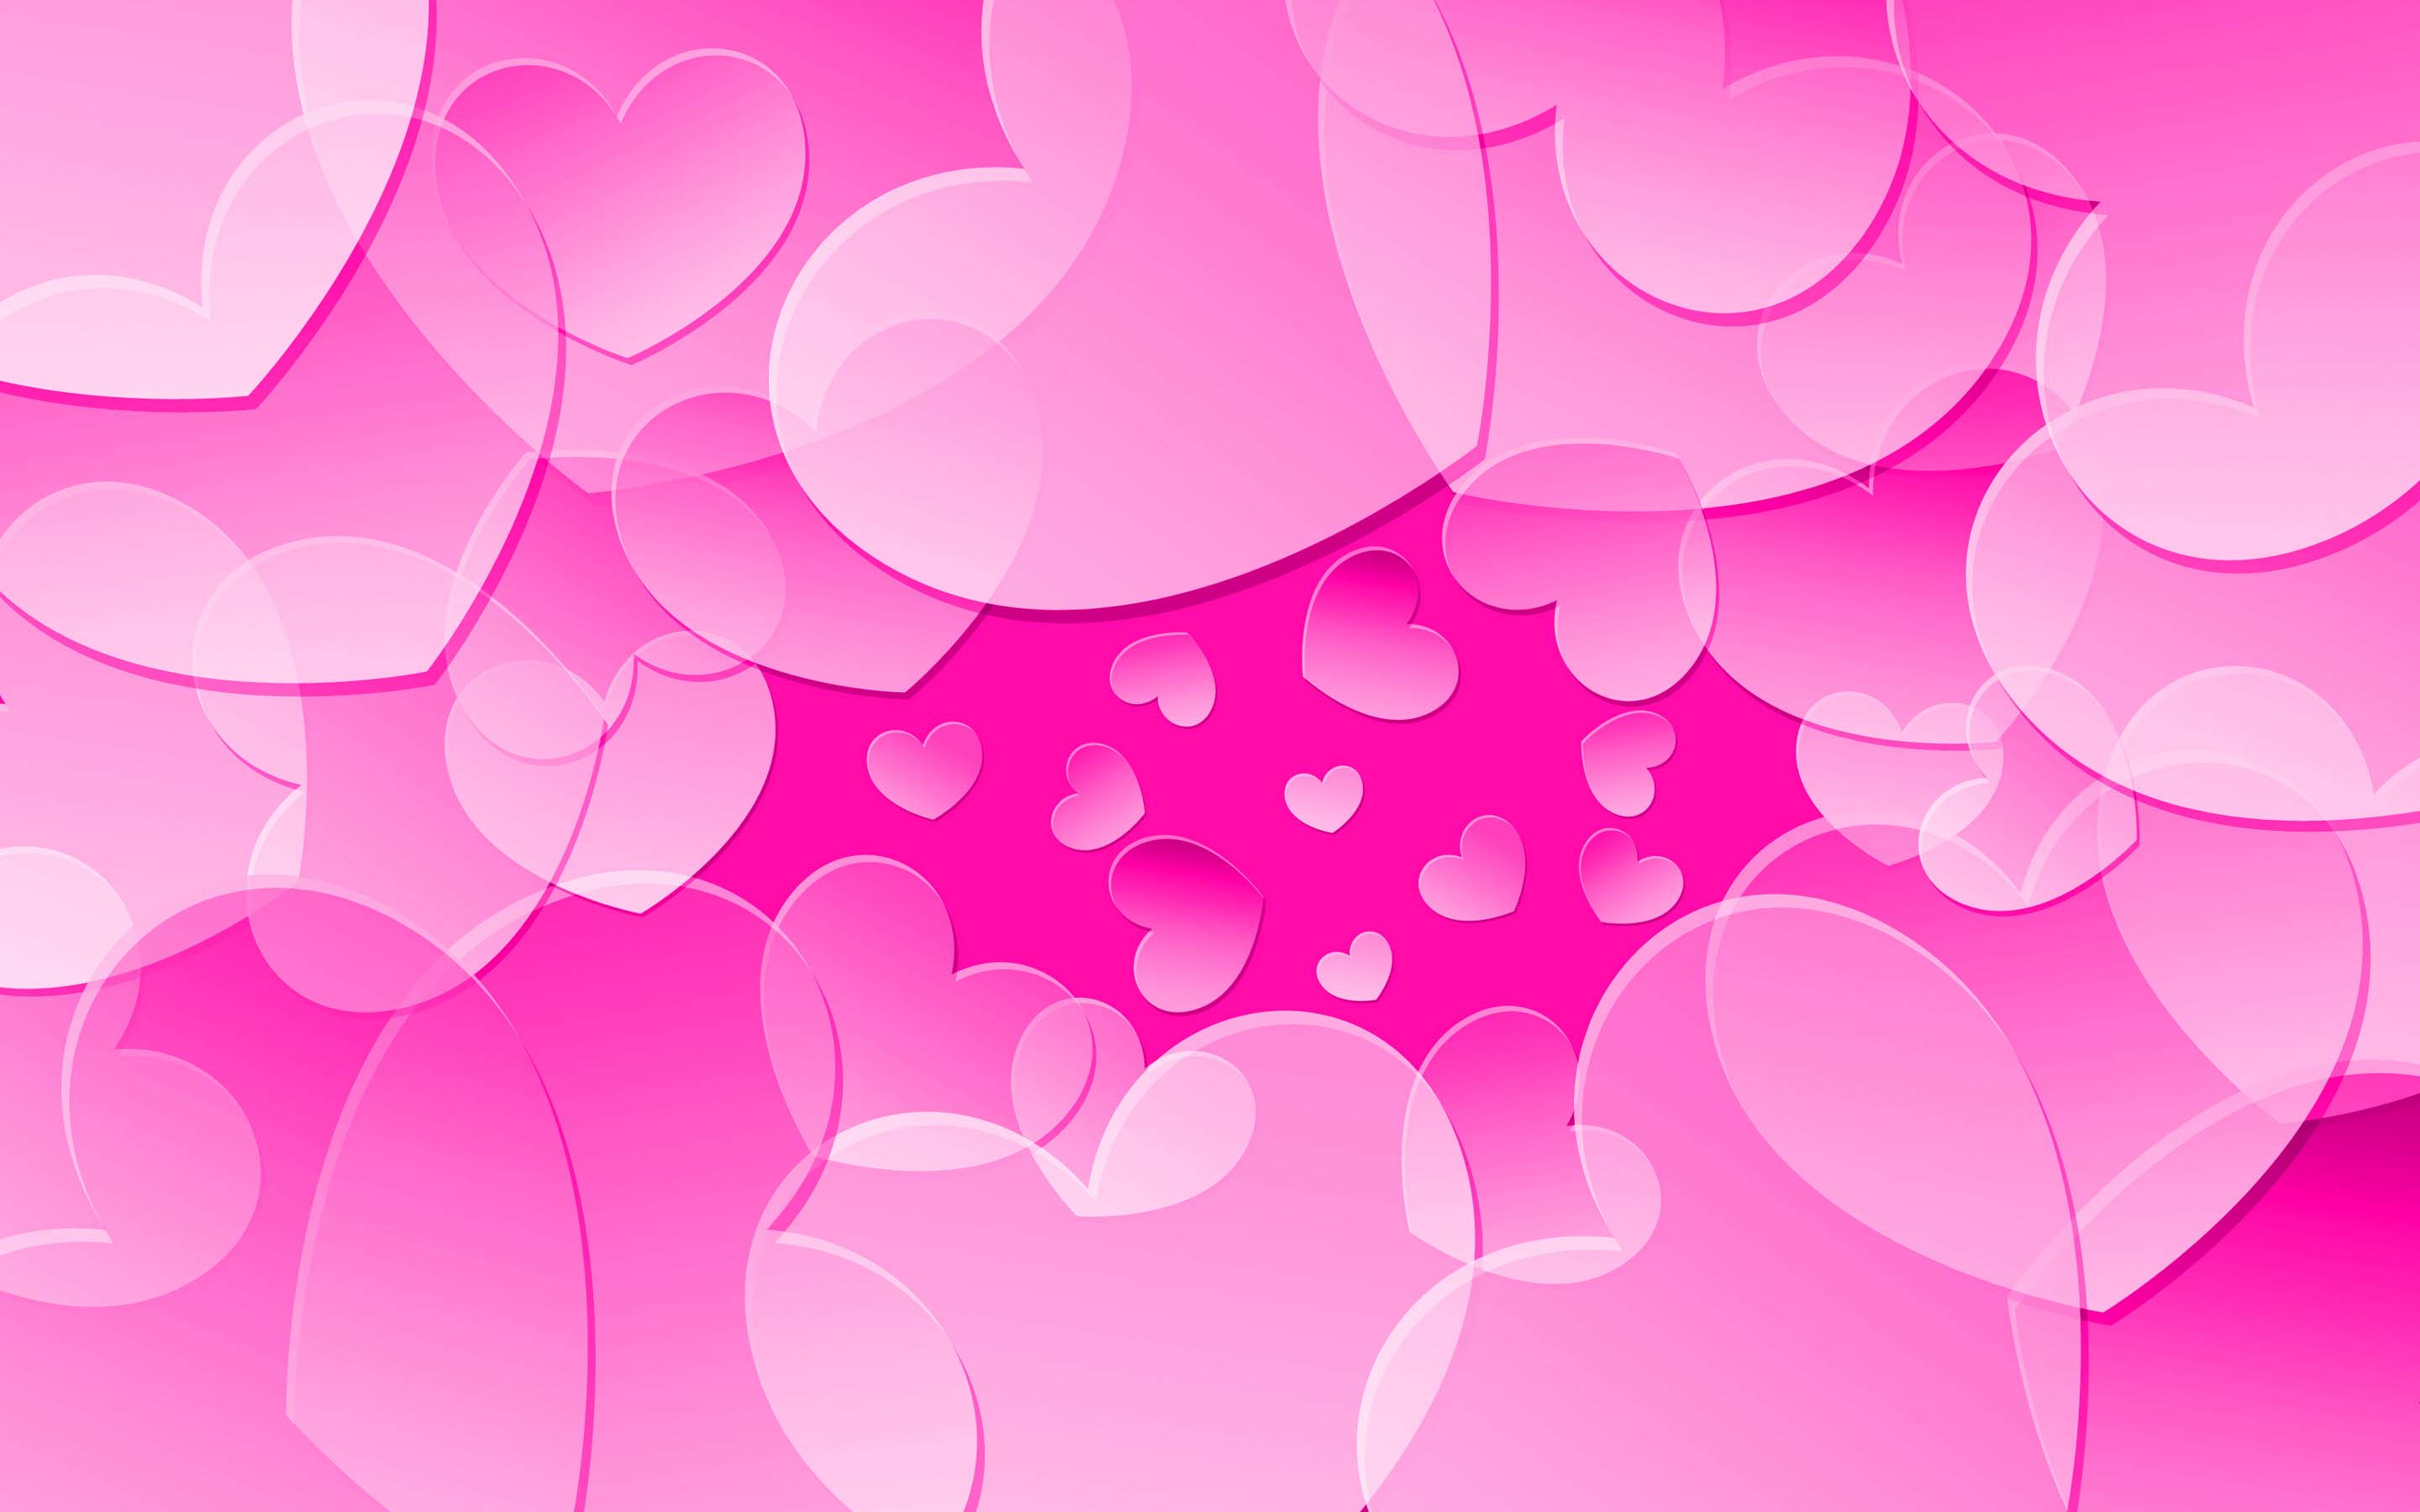 Hình nền dễ thương màu hồng đẹp dễ thương cho điện thoại 99 hình nền màu  hồng